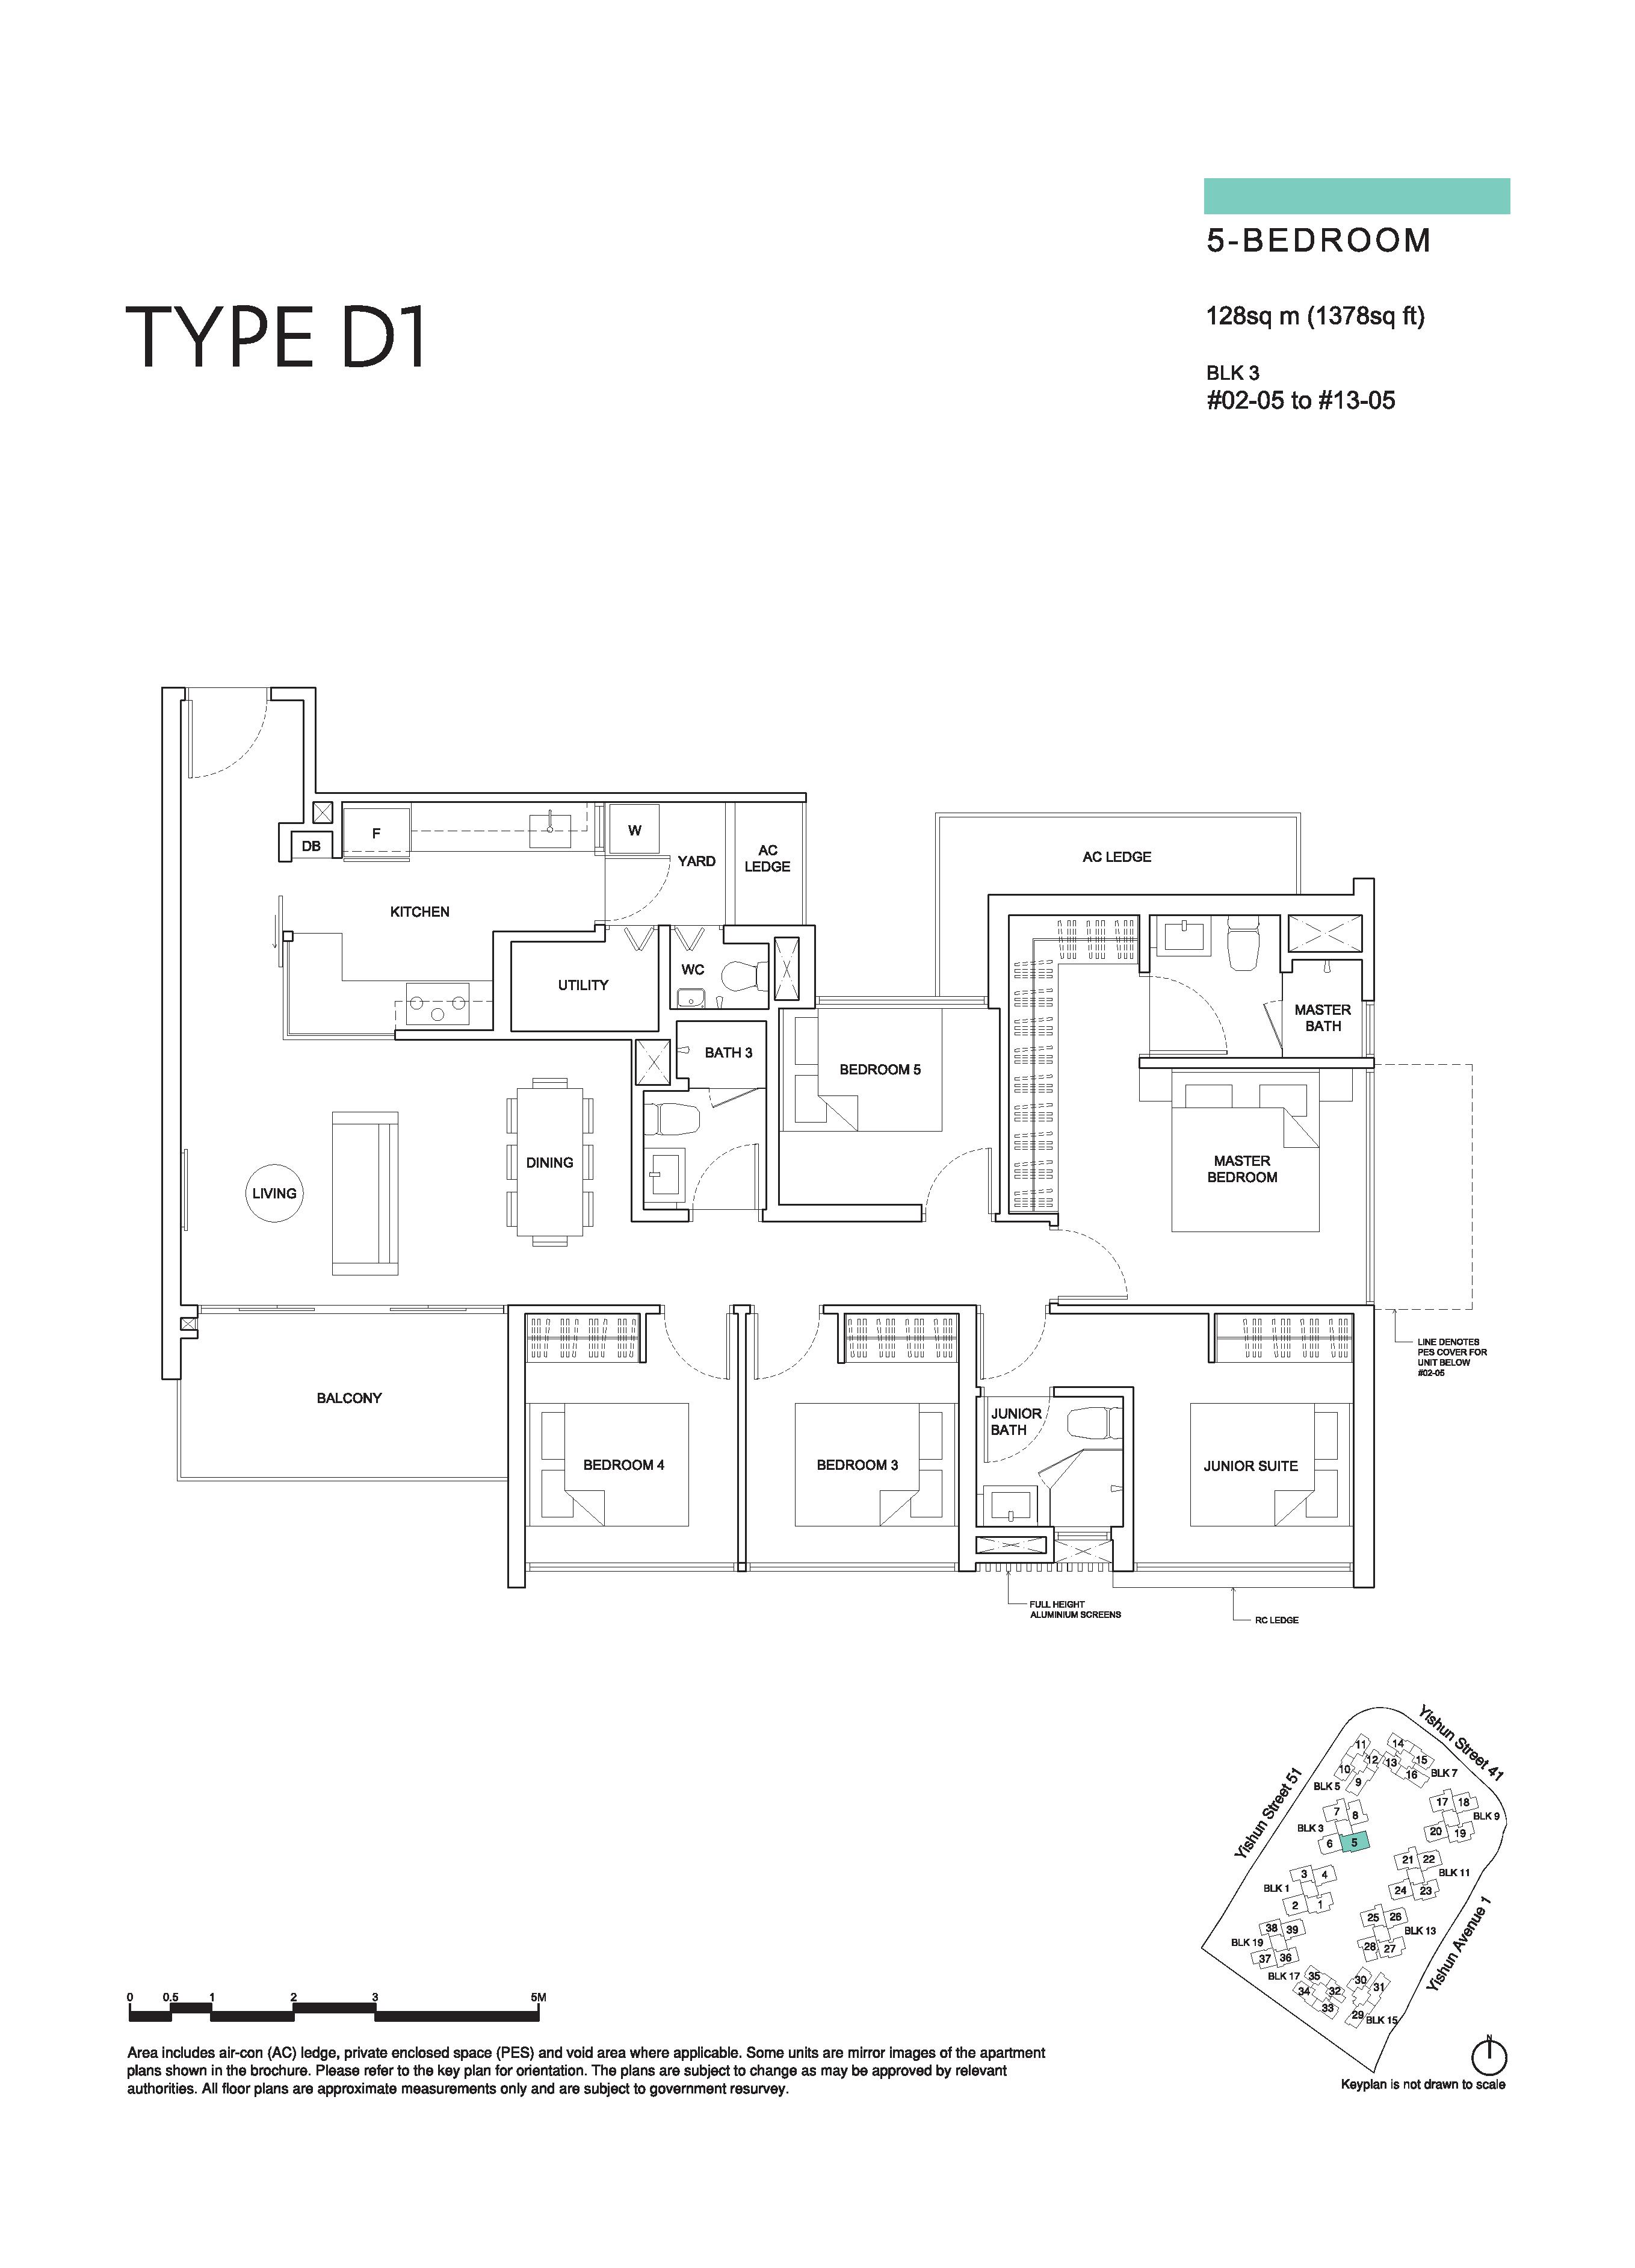 The Criterion 5 Bedroom Floor Plan Type D1